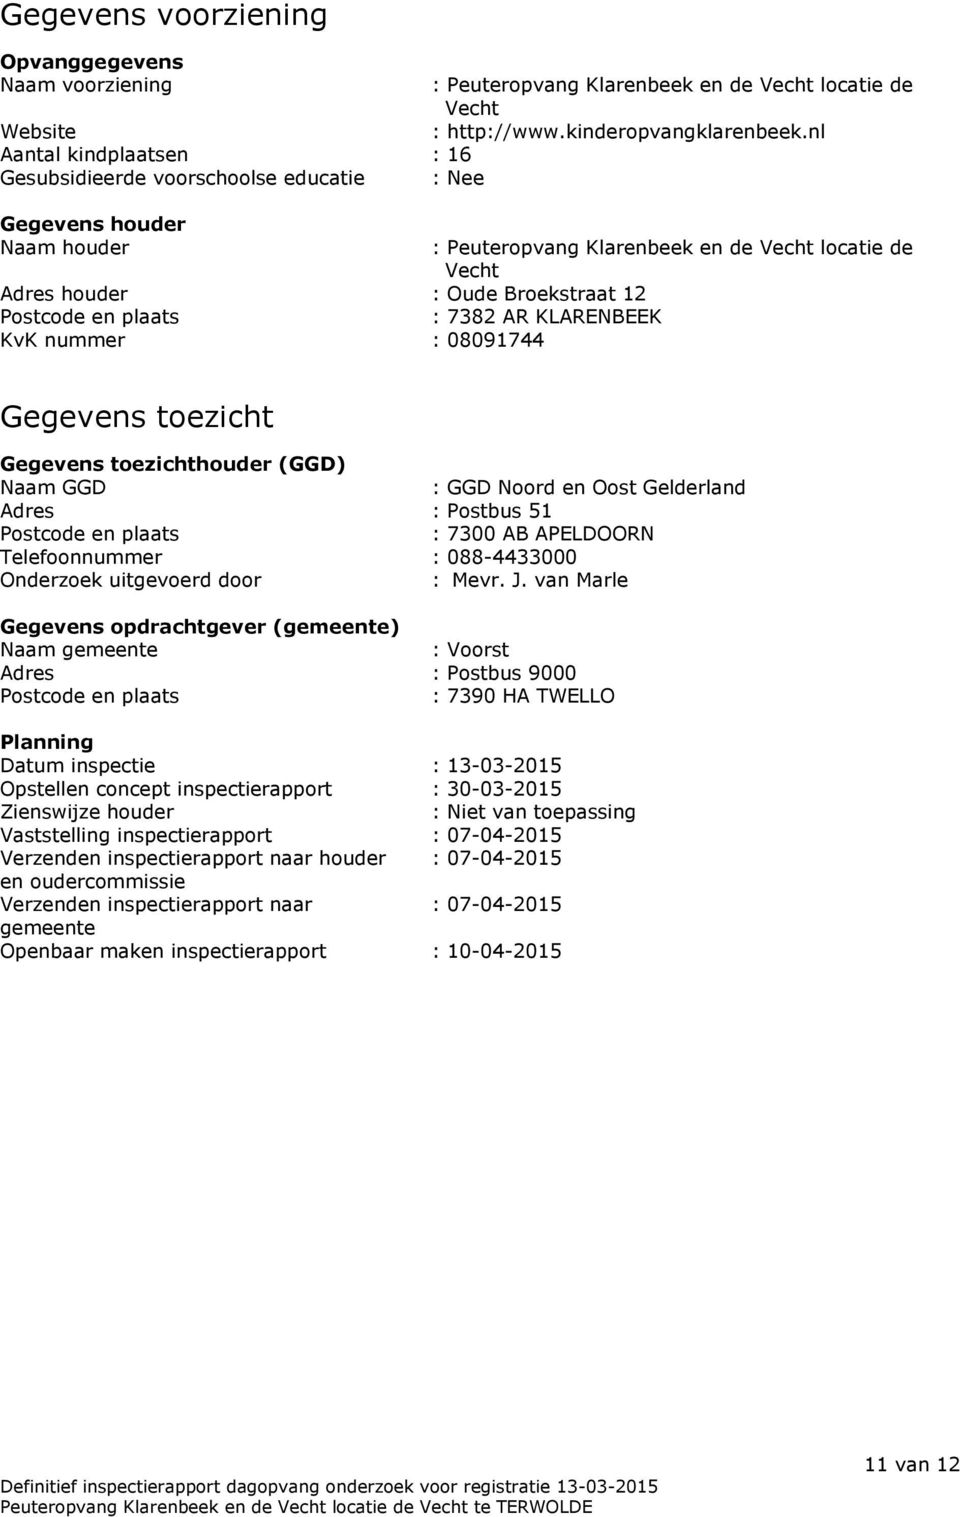 nl : Peuteropvang Klarenbeek en de Vecht locatie de Vecht Gegevens toezicht Gegevens toezichthouder (GGD) Naam GGD : GGD Noord en Oost Gelderland Adres : Postbus 51 Postcode en plaats : 7300 AB